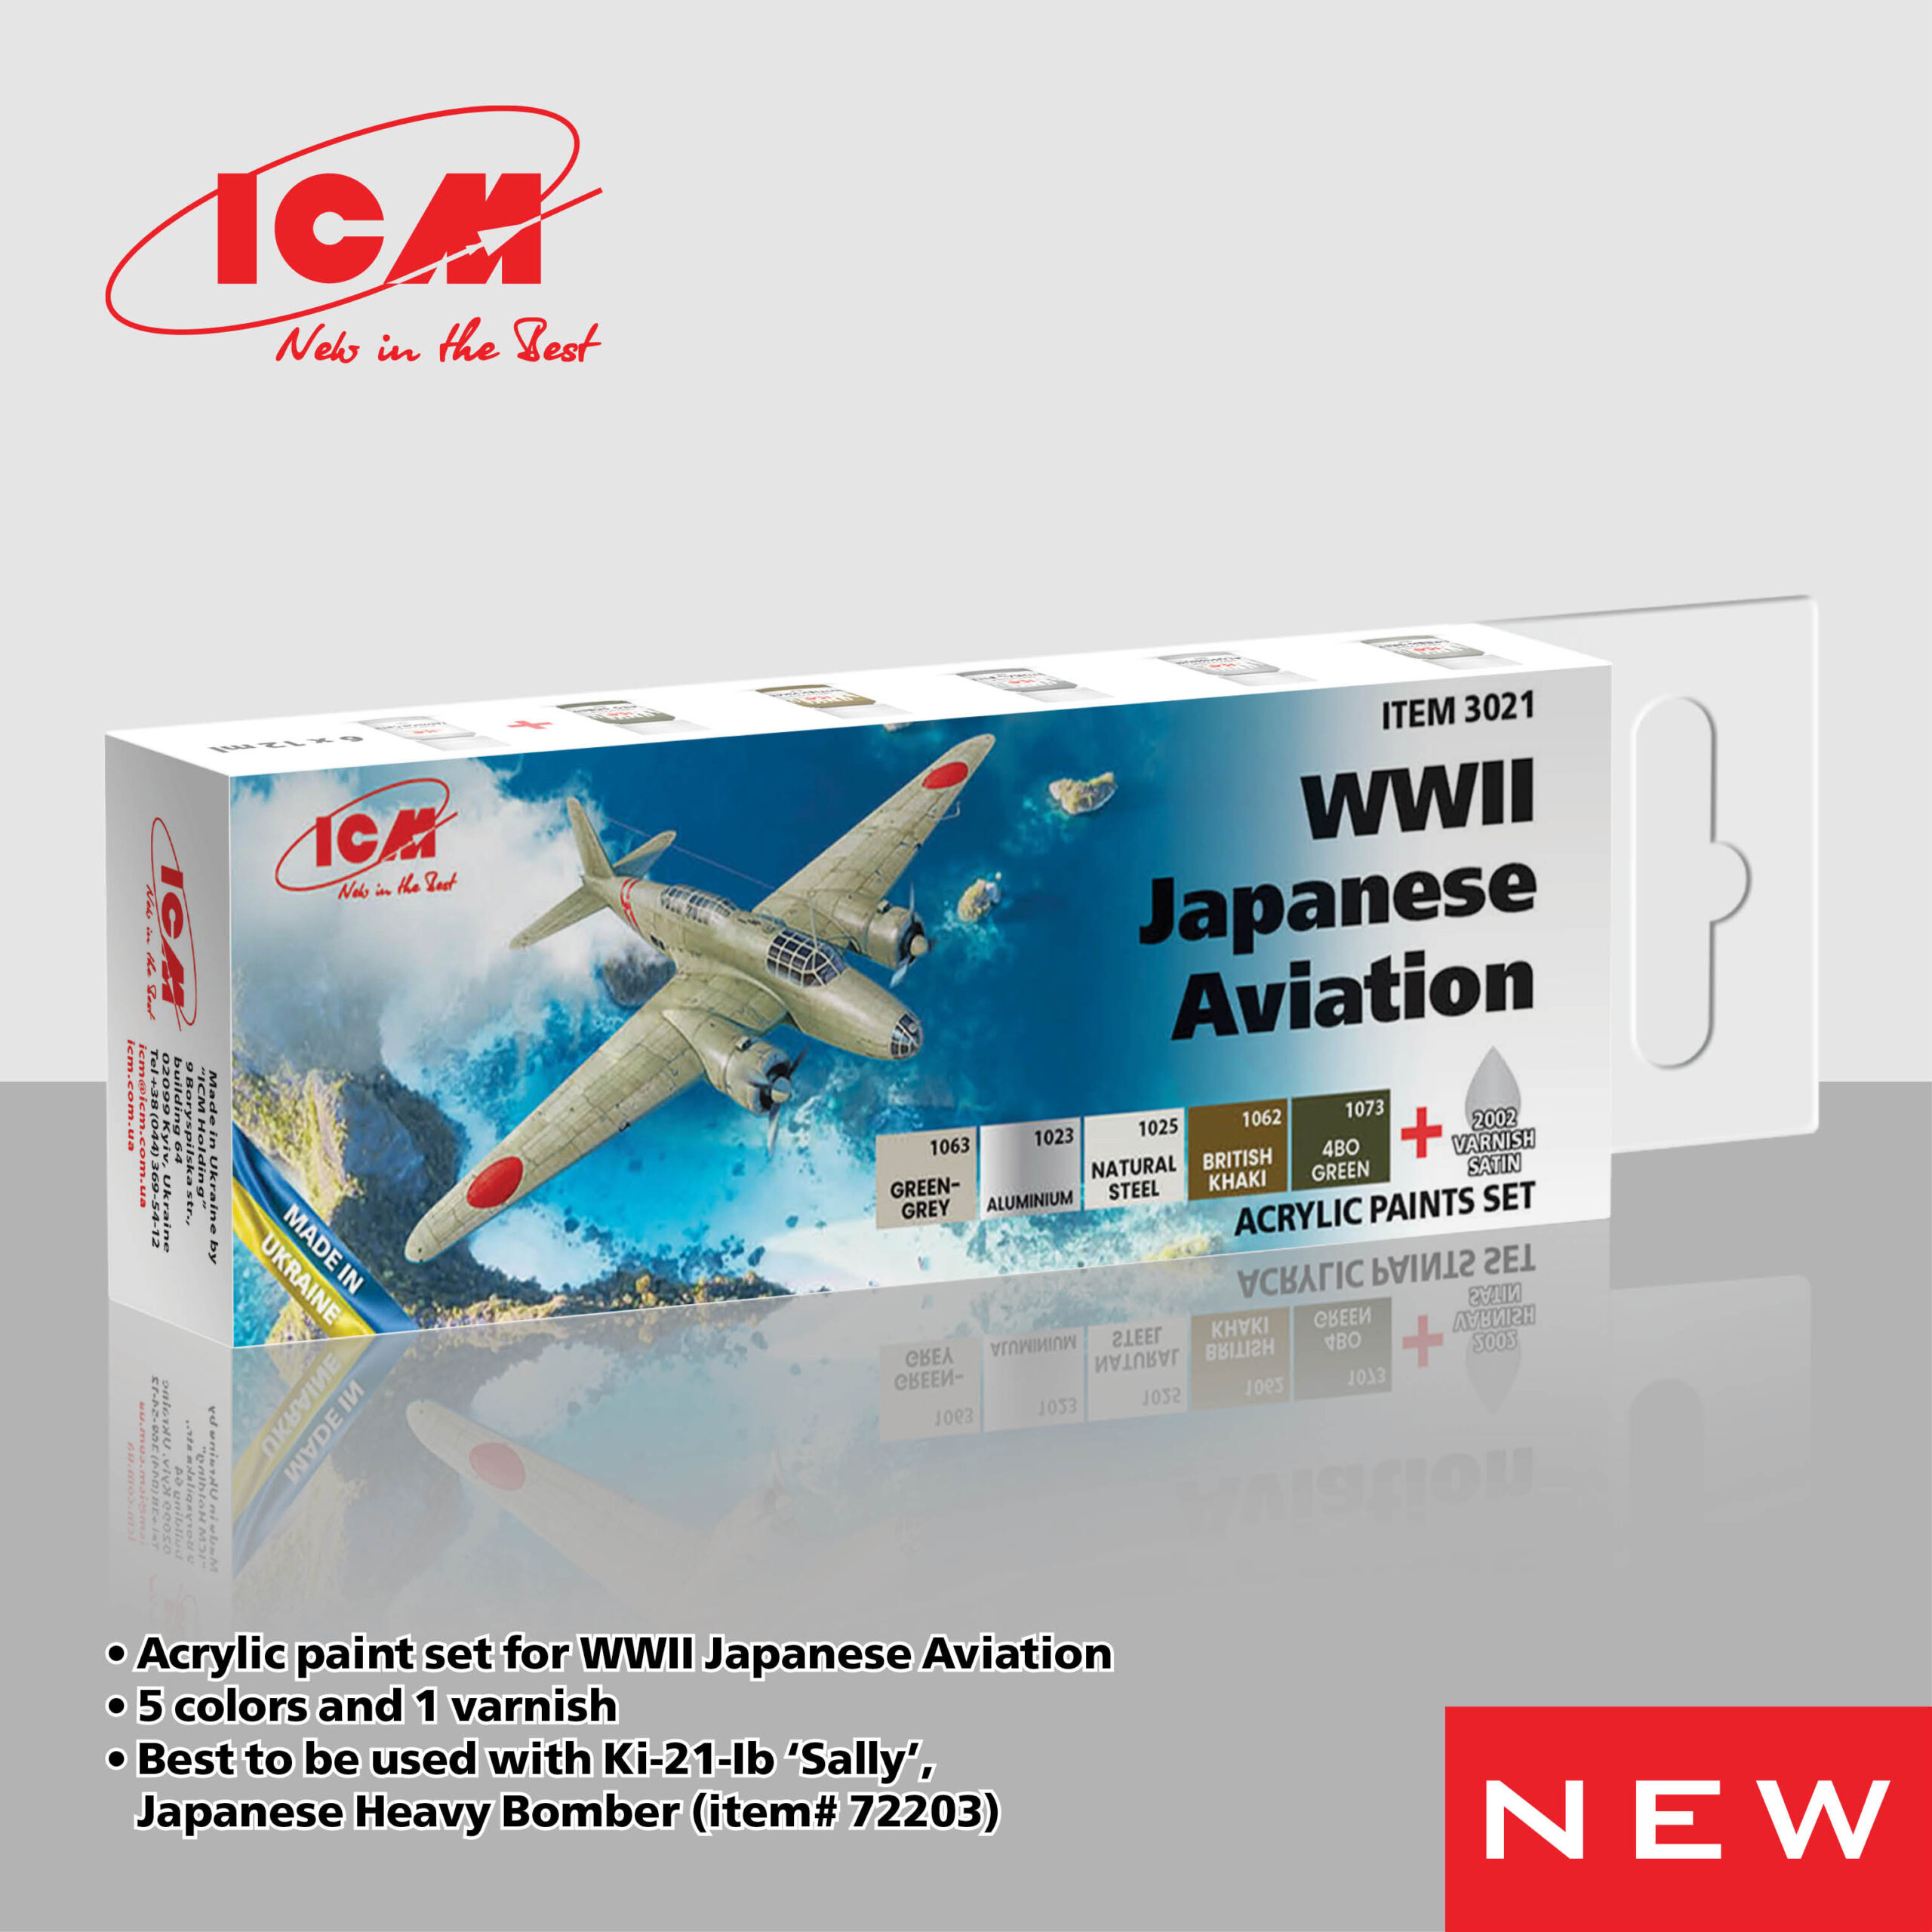 ICM WWII Japanese Aviation - acrylic paint set 
6 bottles х 12 ml